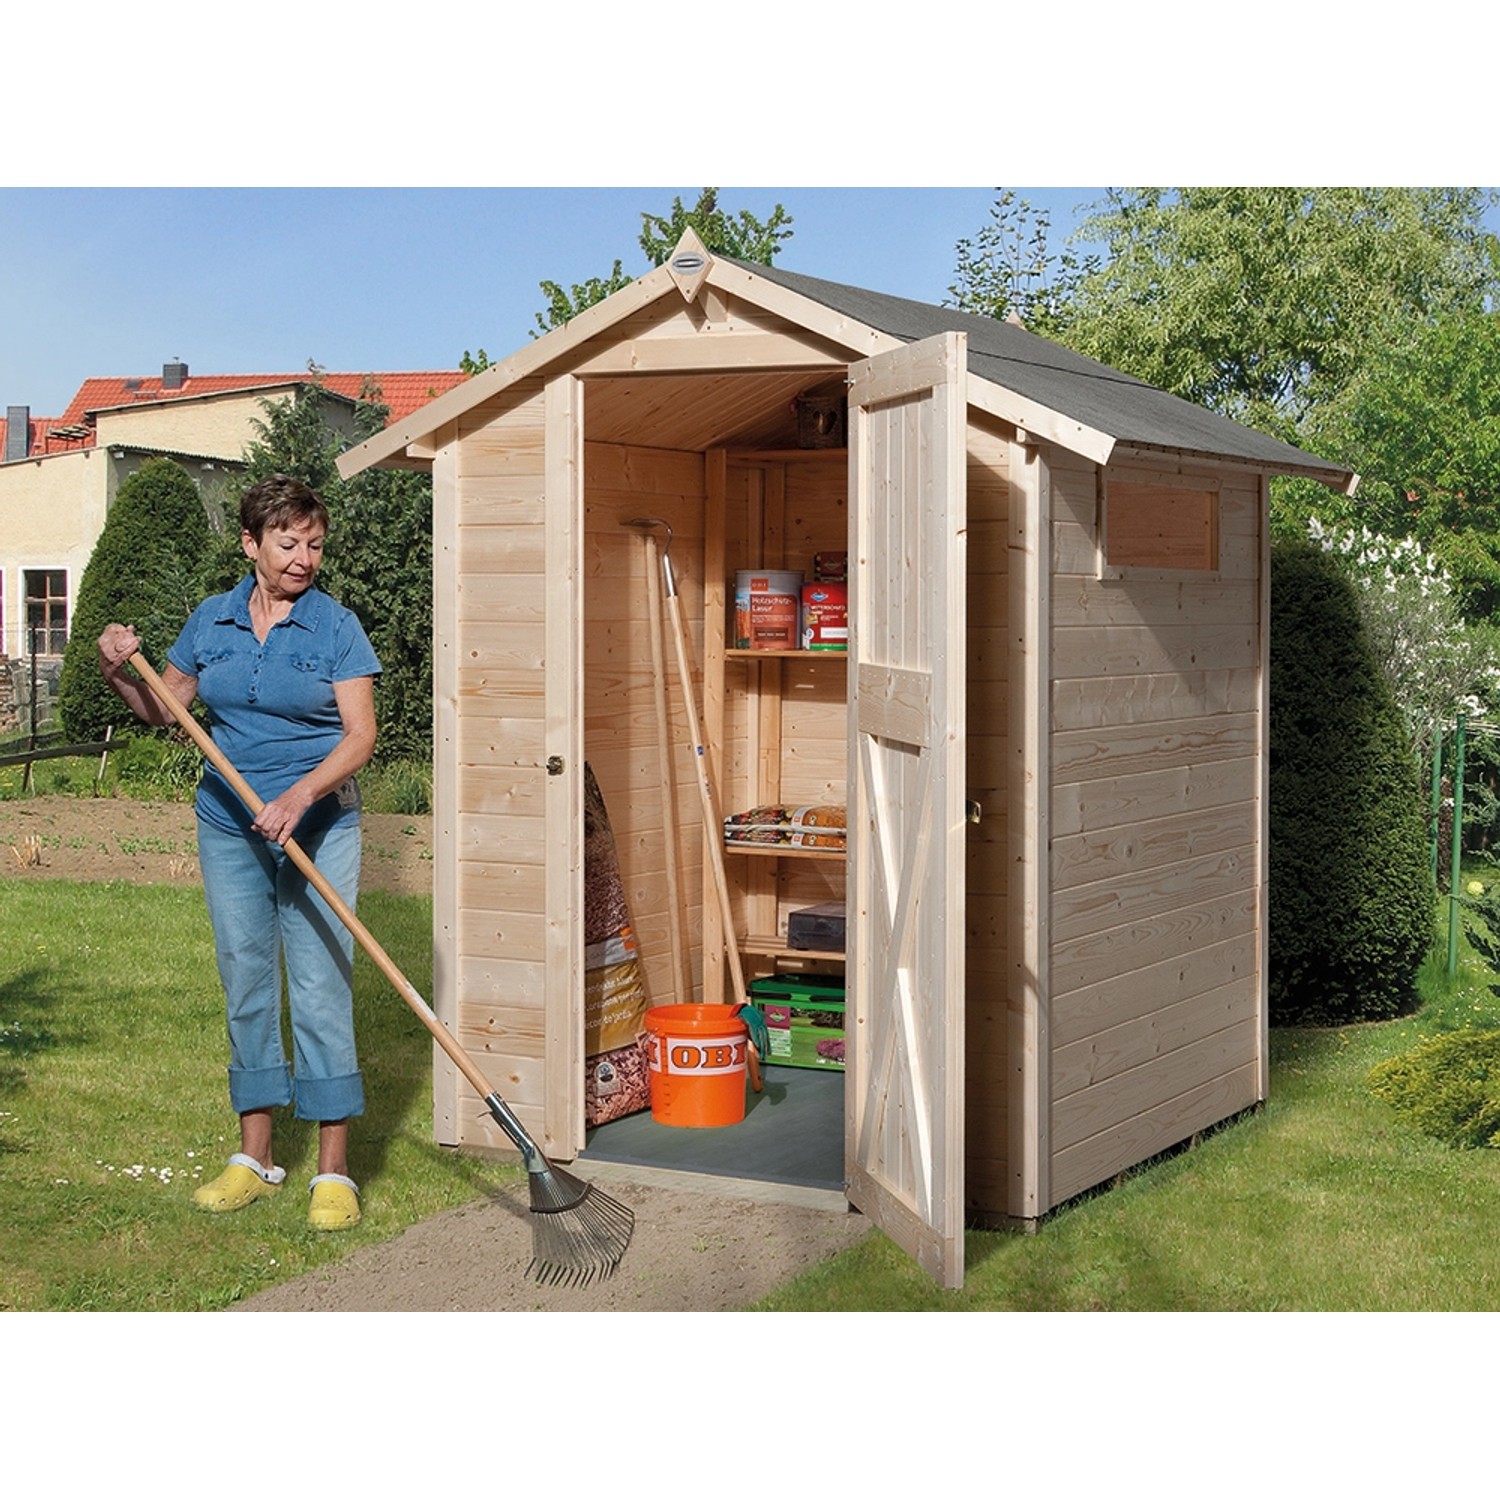 OBI Outdoor Living Holz-Gartenhaus/Gerätehaus Kompakt Satteldach 152 cm x 171 cm von OBI Outdoor Living